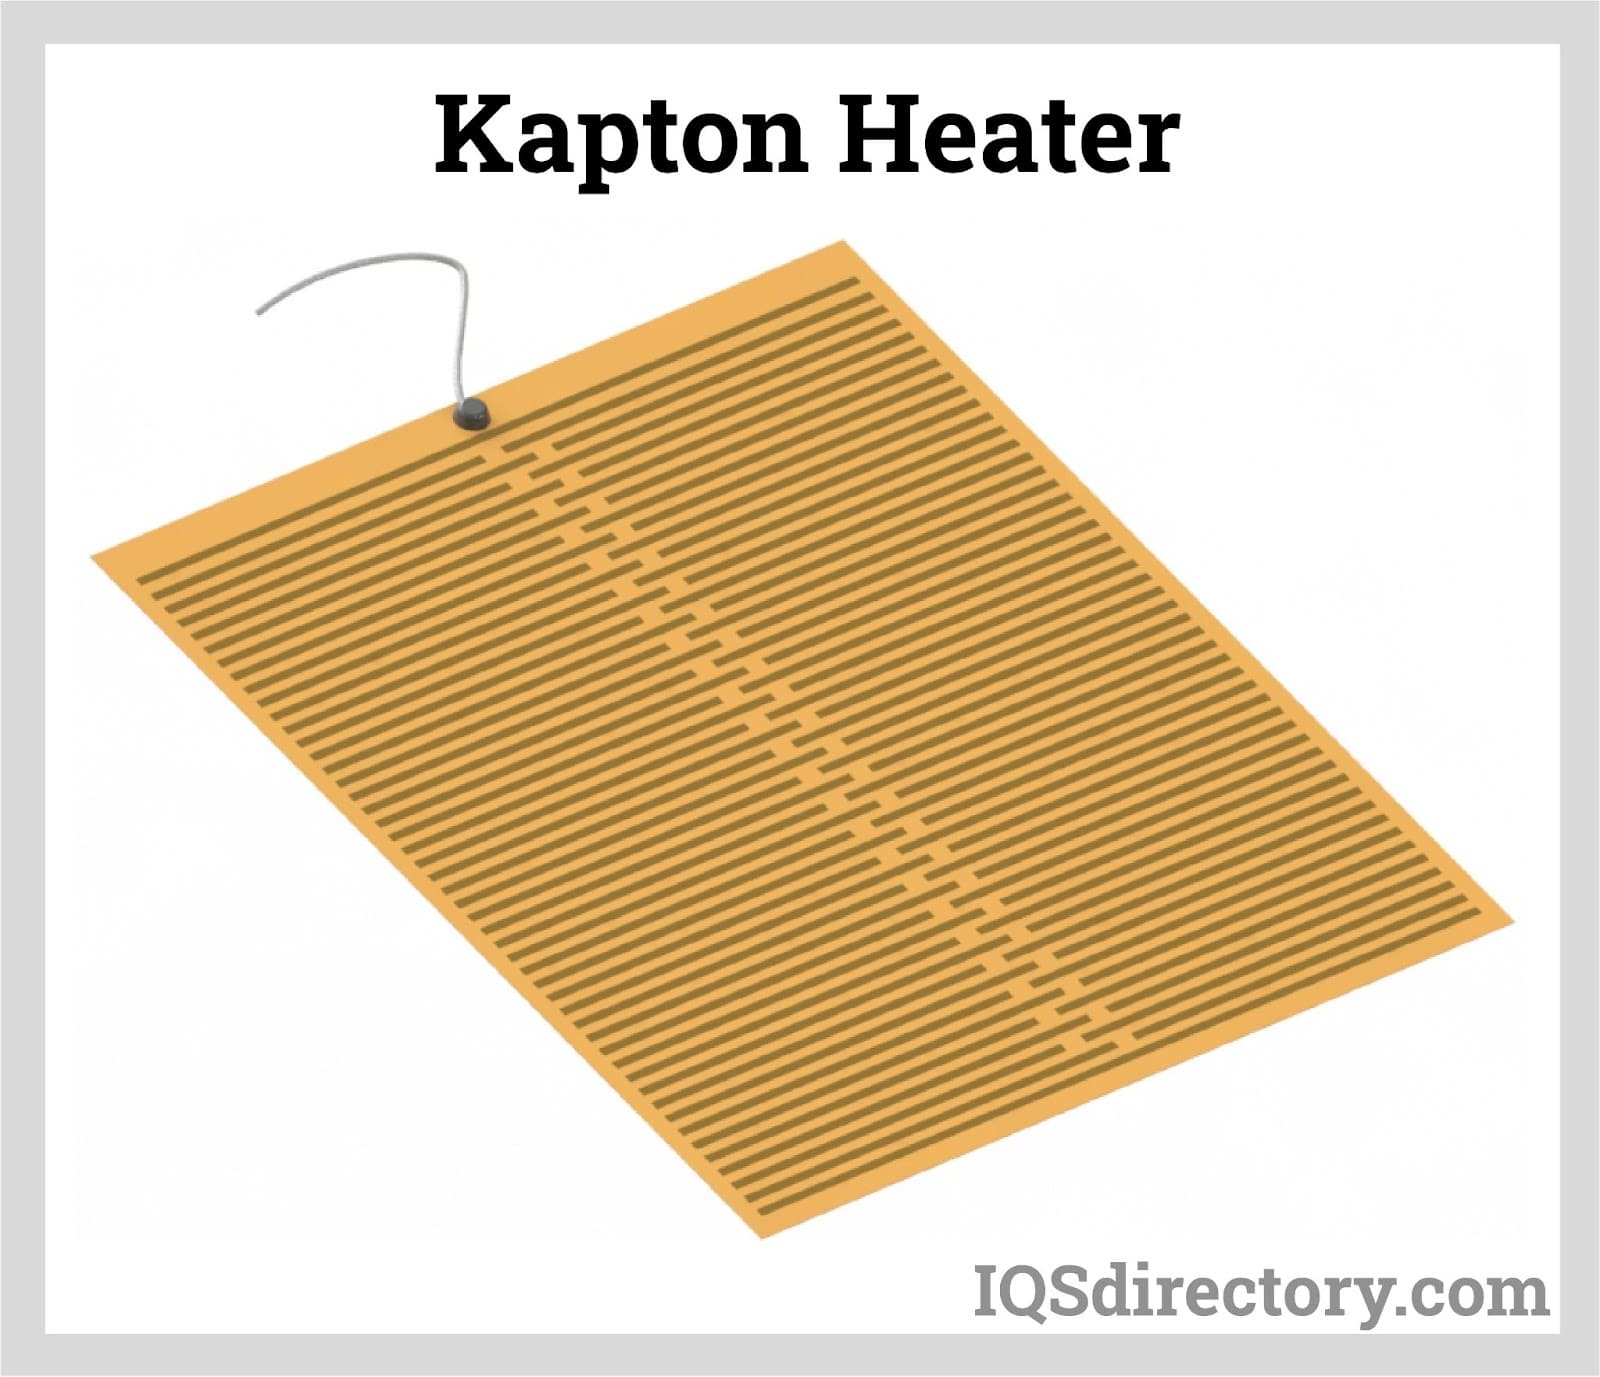 Kapton Heater